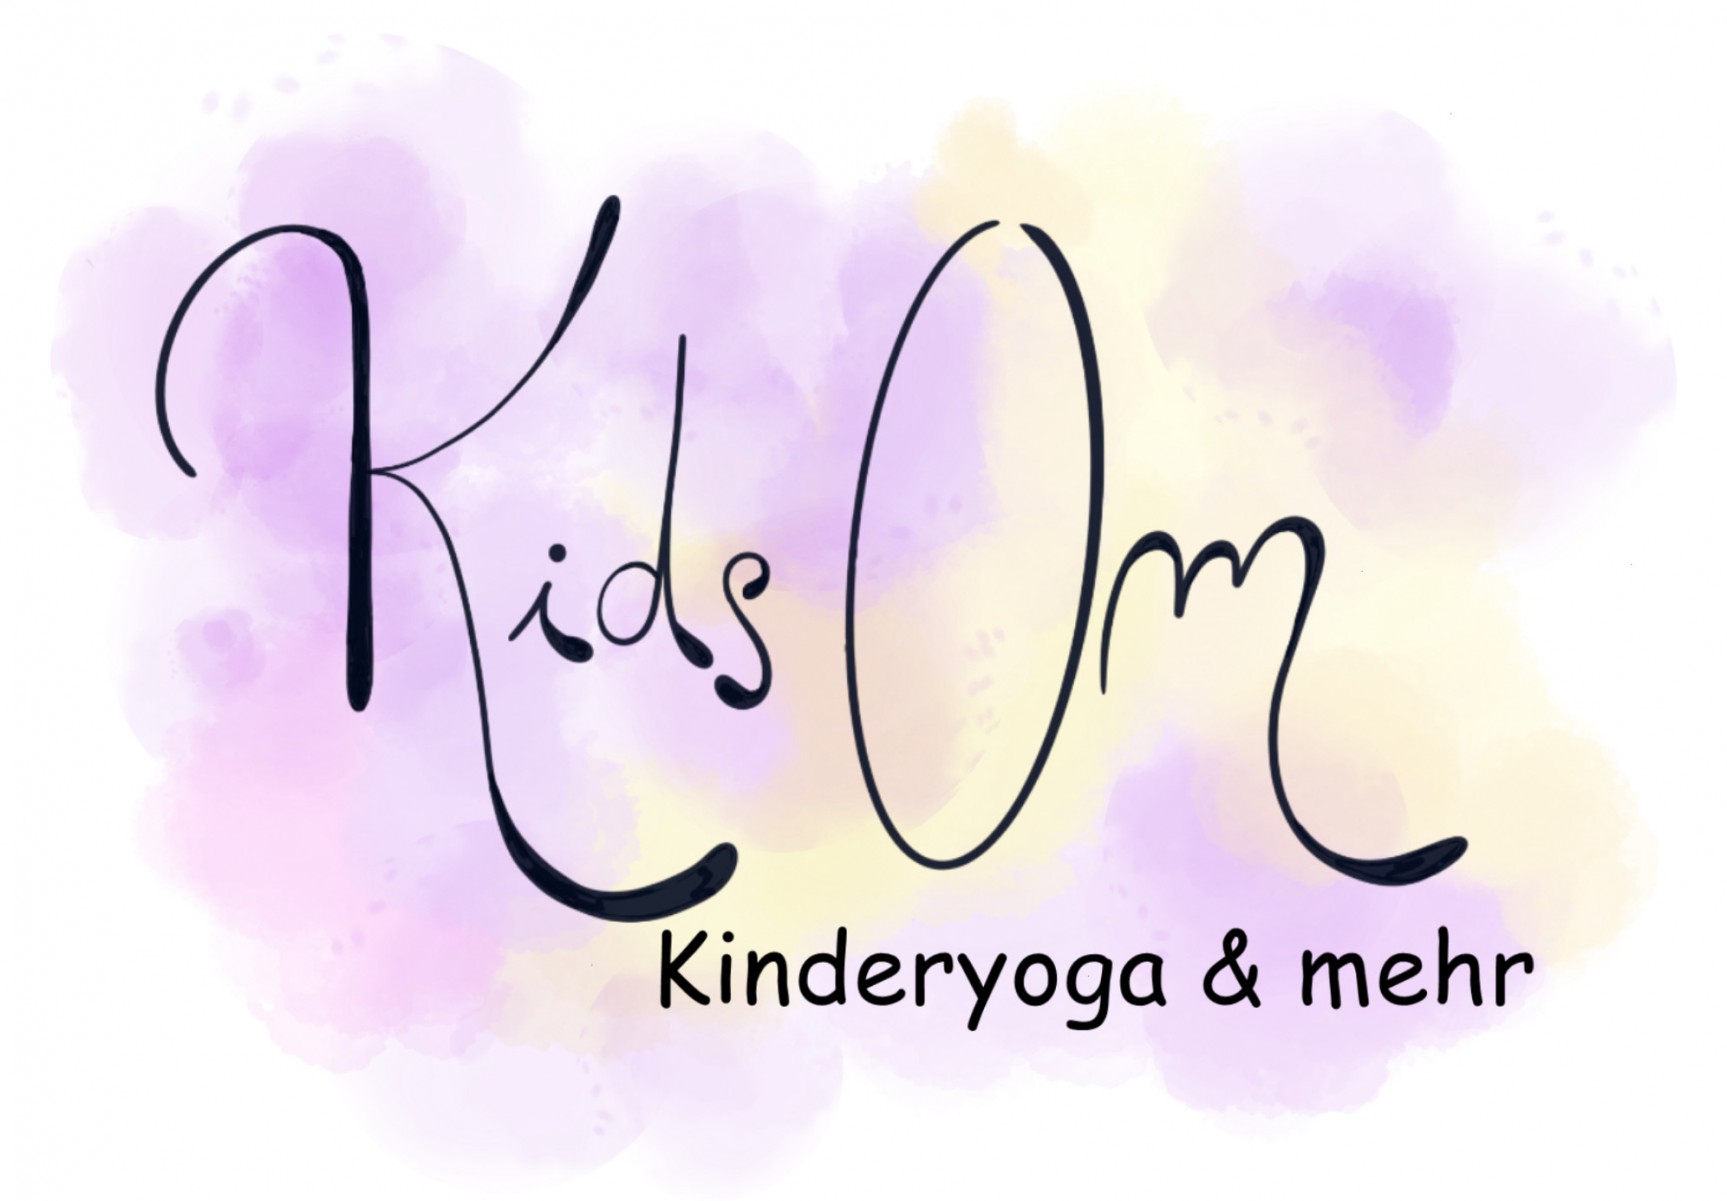 KidsOm Yoga